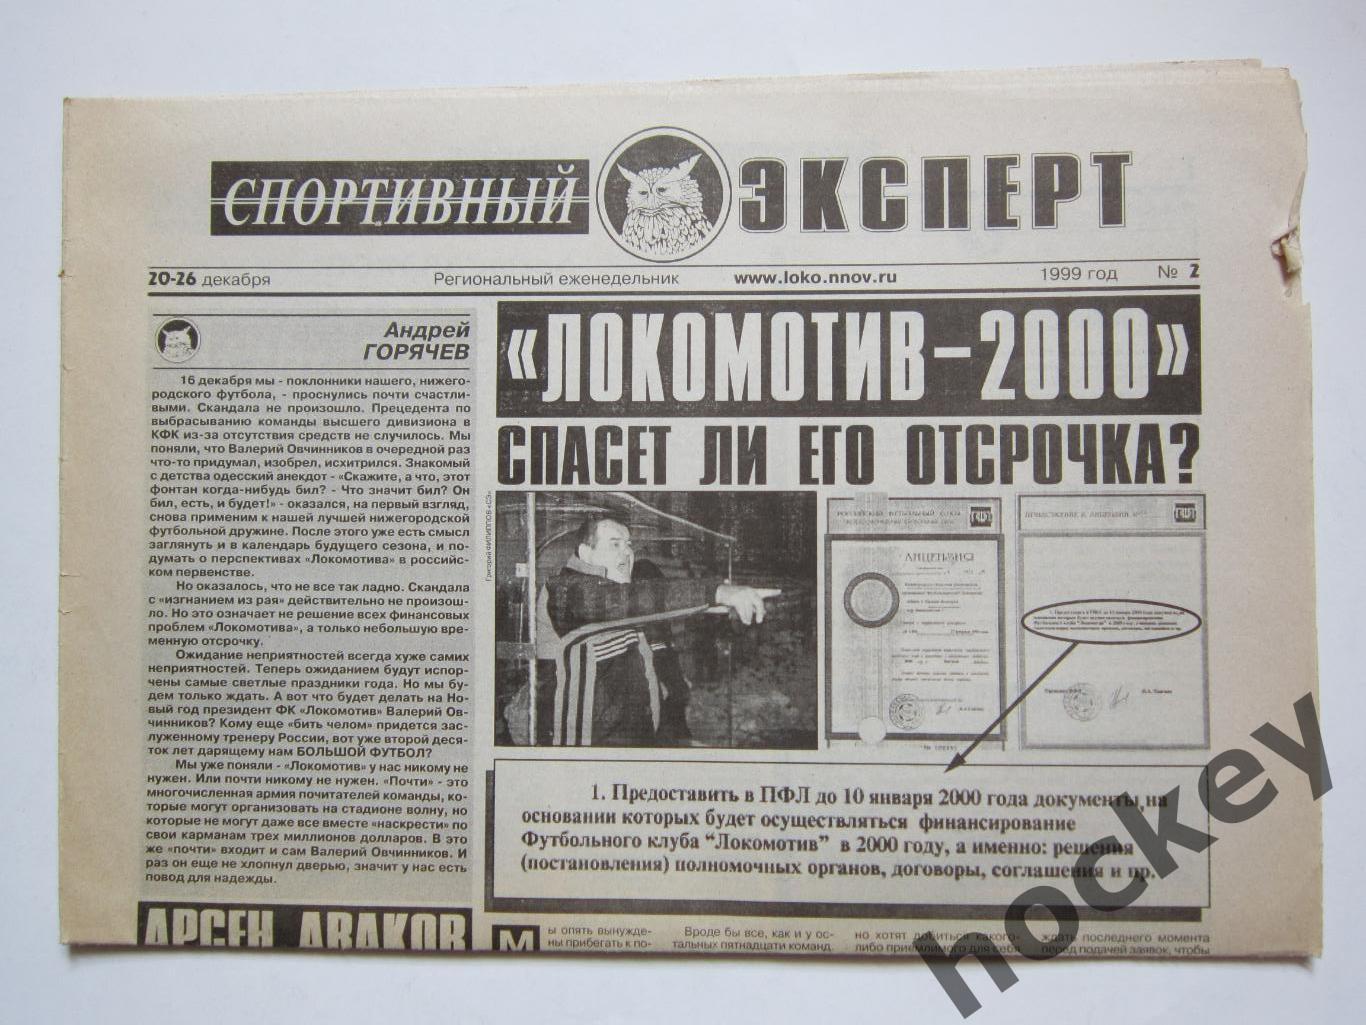 Спортивный эксперт № 2.1999 (20-26 декабря). Нижний Новгород.